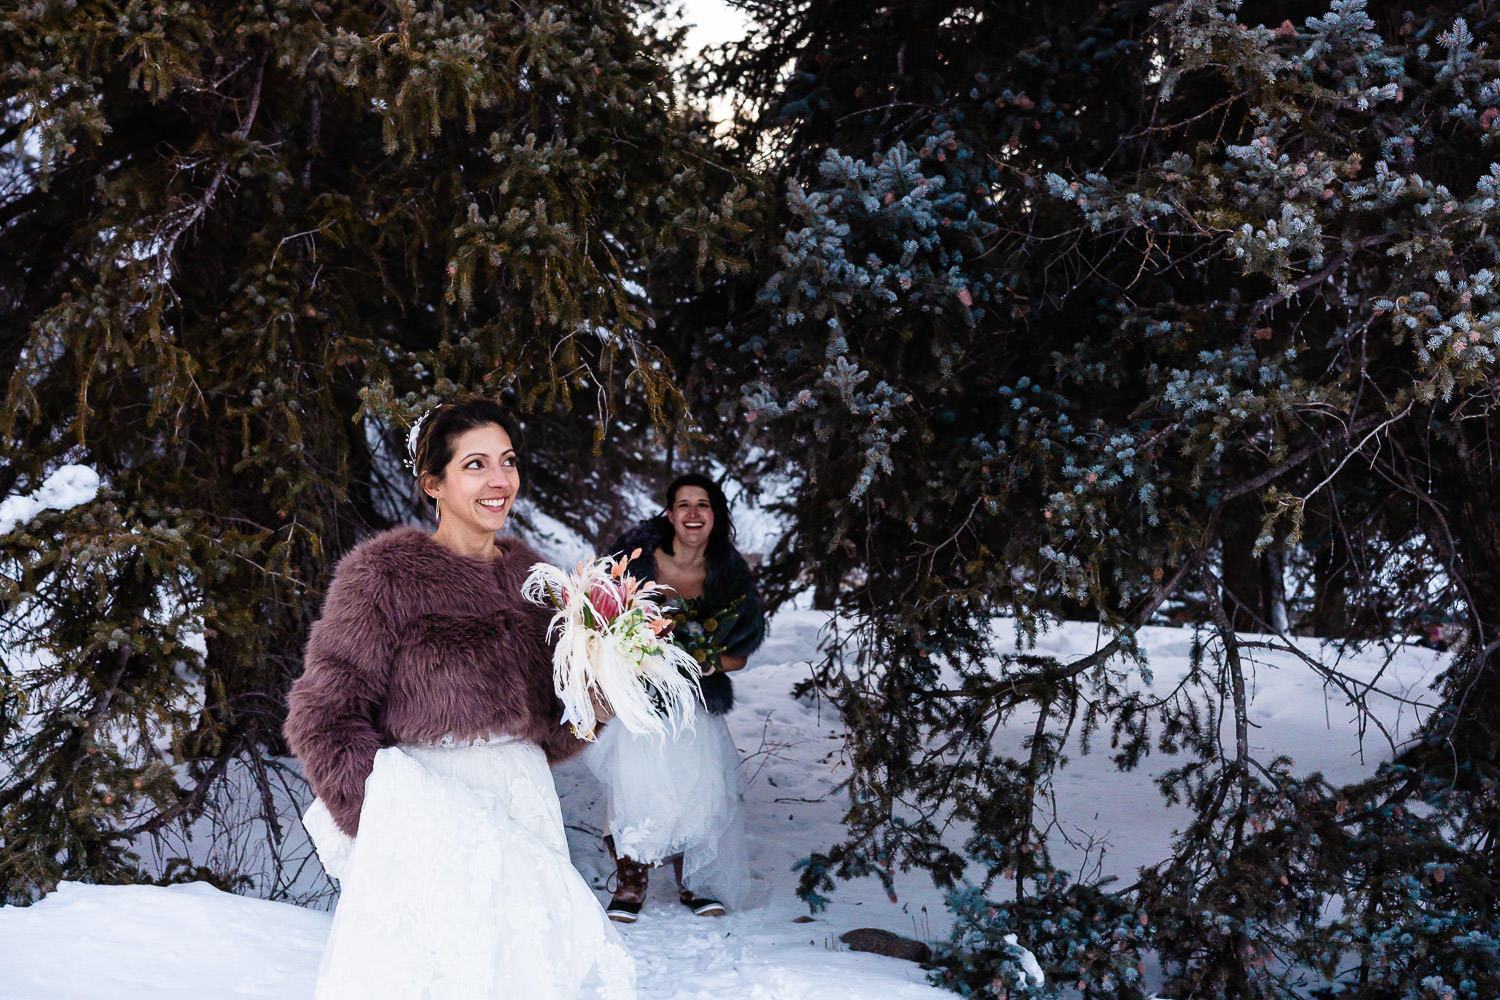 lesbian newlyweds hiking through a snowy forest